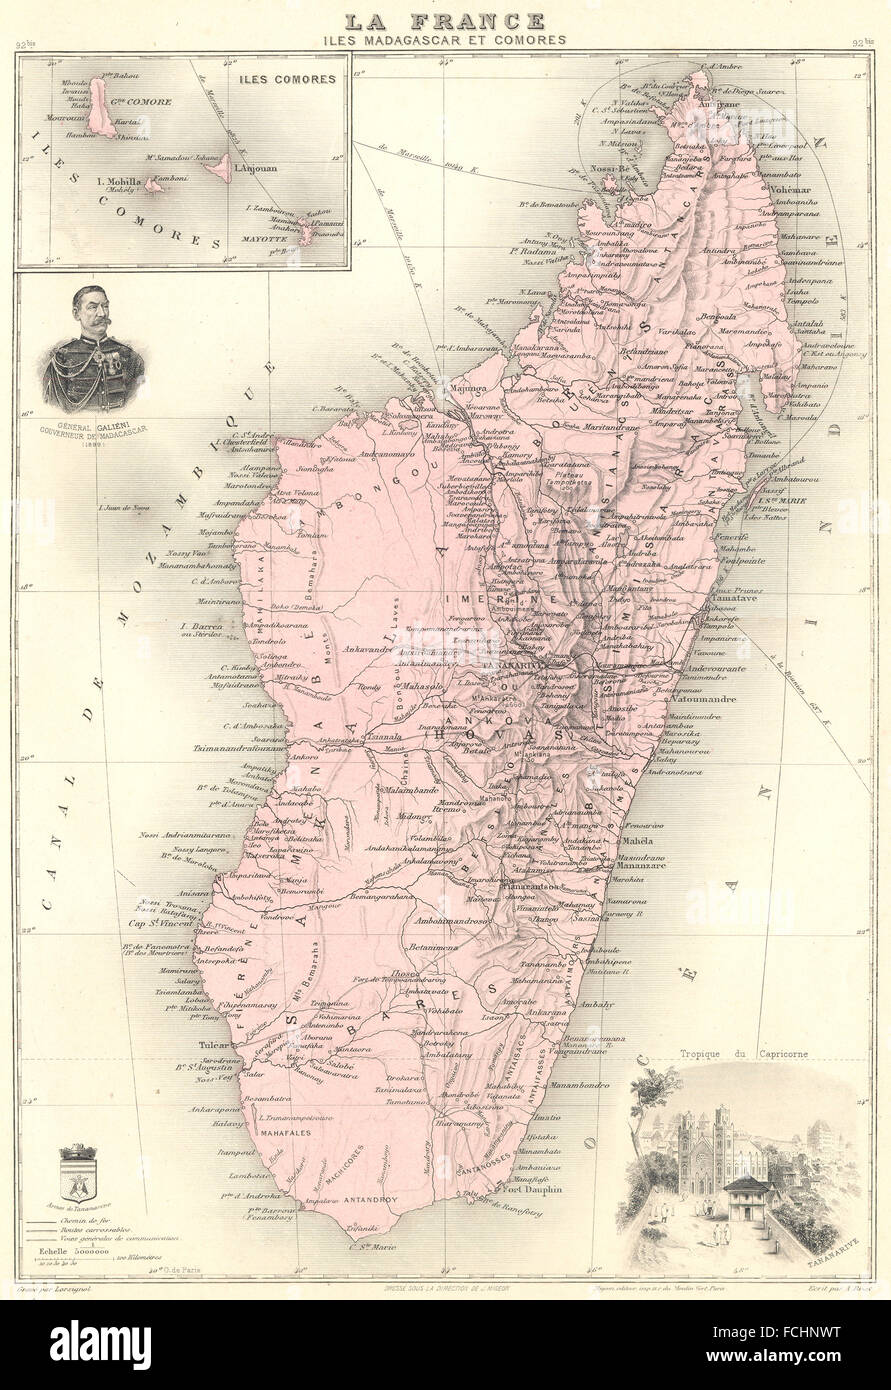 MADAGASCAR : Iles Madagascar et Comores. Tananarive. Vuillemin., 1903 Ancien site Banque D'Images